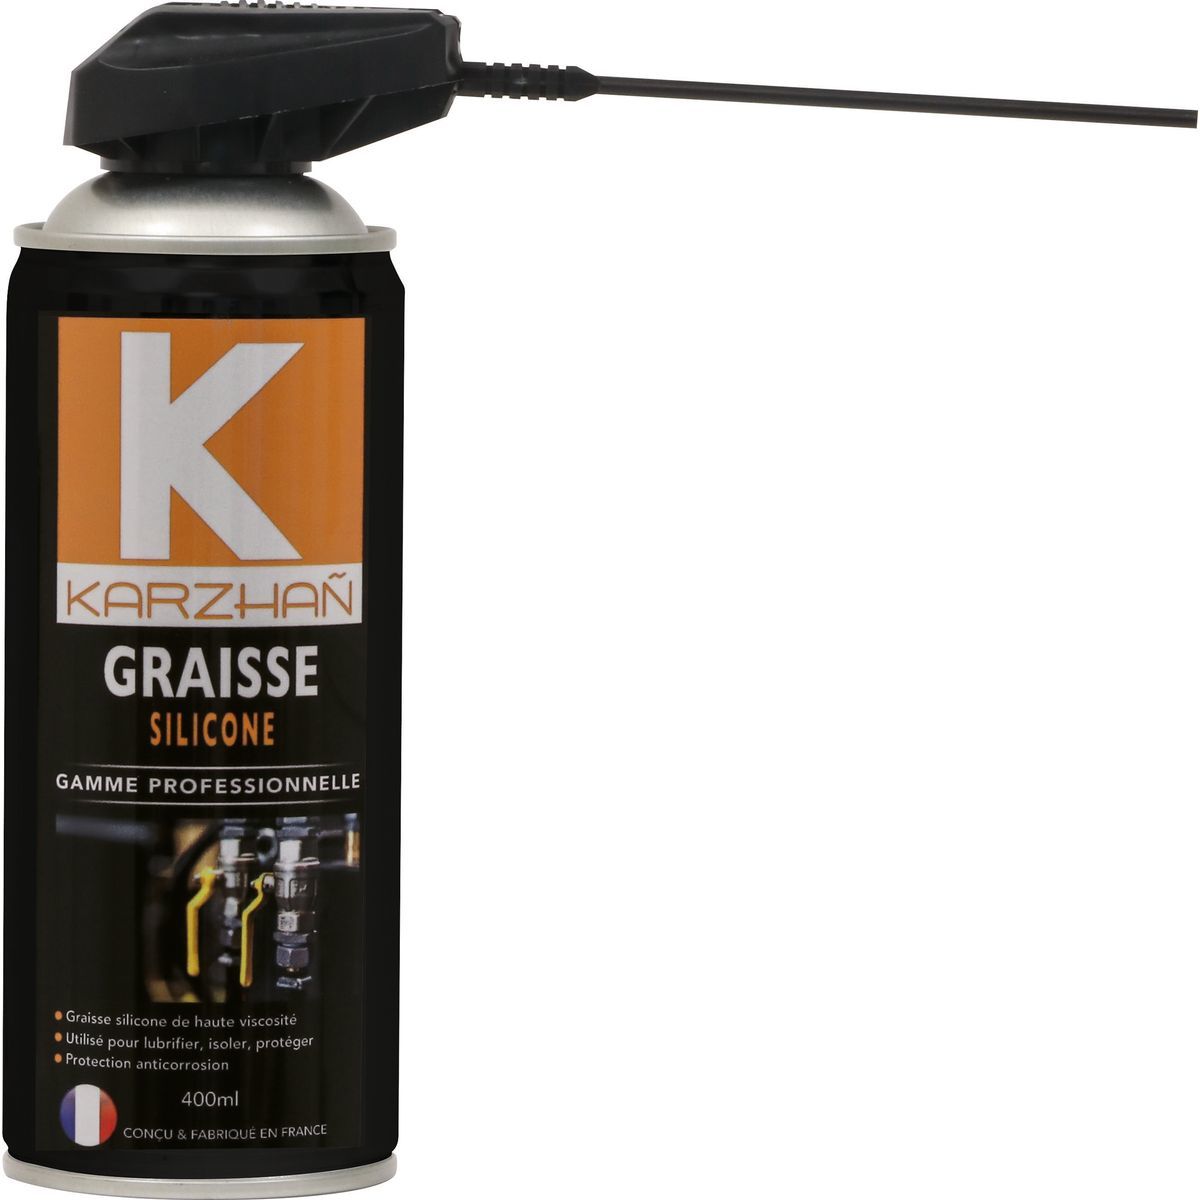 https://www.agripartner.fr/Image/36664/1200x1200/graisse-silicone-de-haute-viscosite-karzhan-pour-la-lubrification-l-isolation-et-la-protection-aerosol-400-ml.jpg